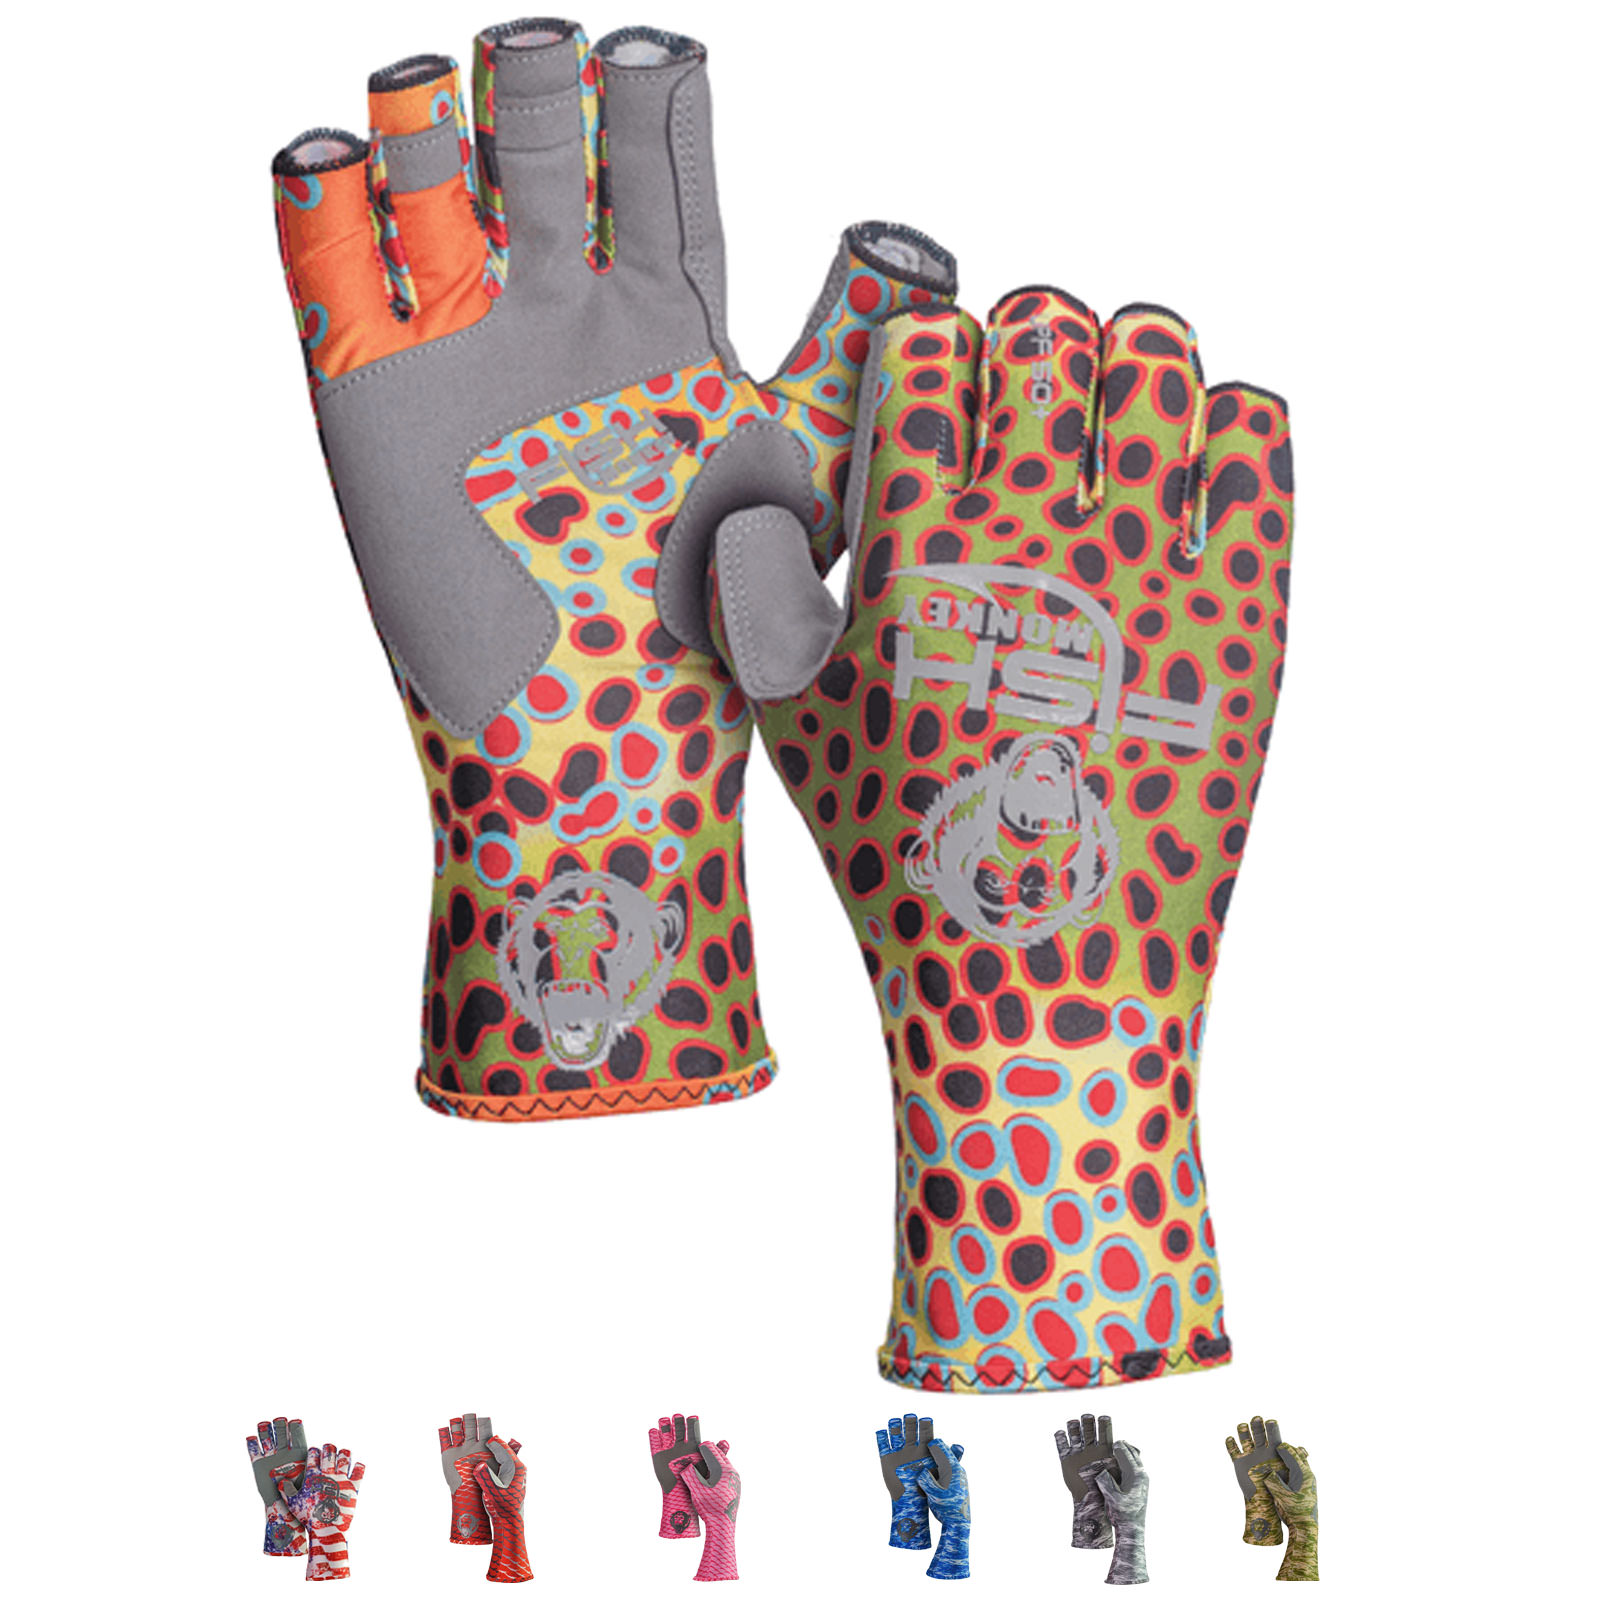 Kastking Gloveswomen's Fingerless Fishing Gloves - Upf50+ Sun